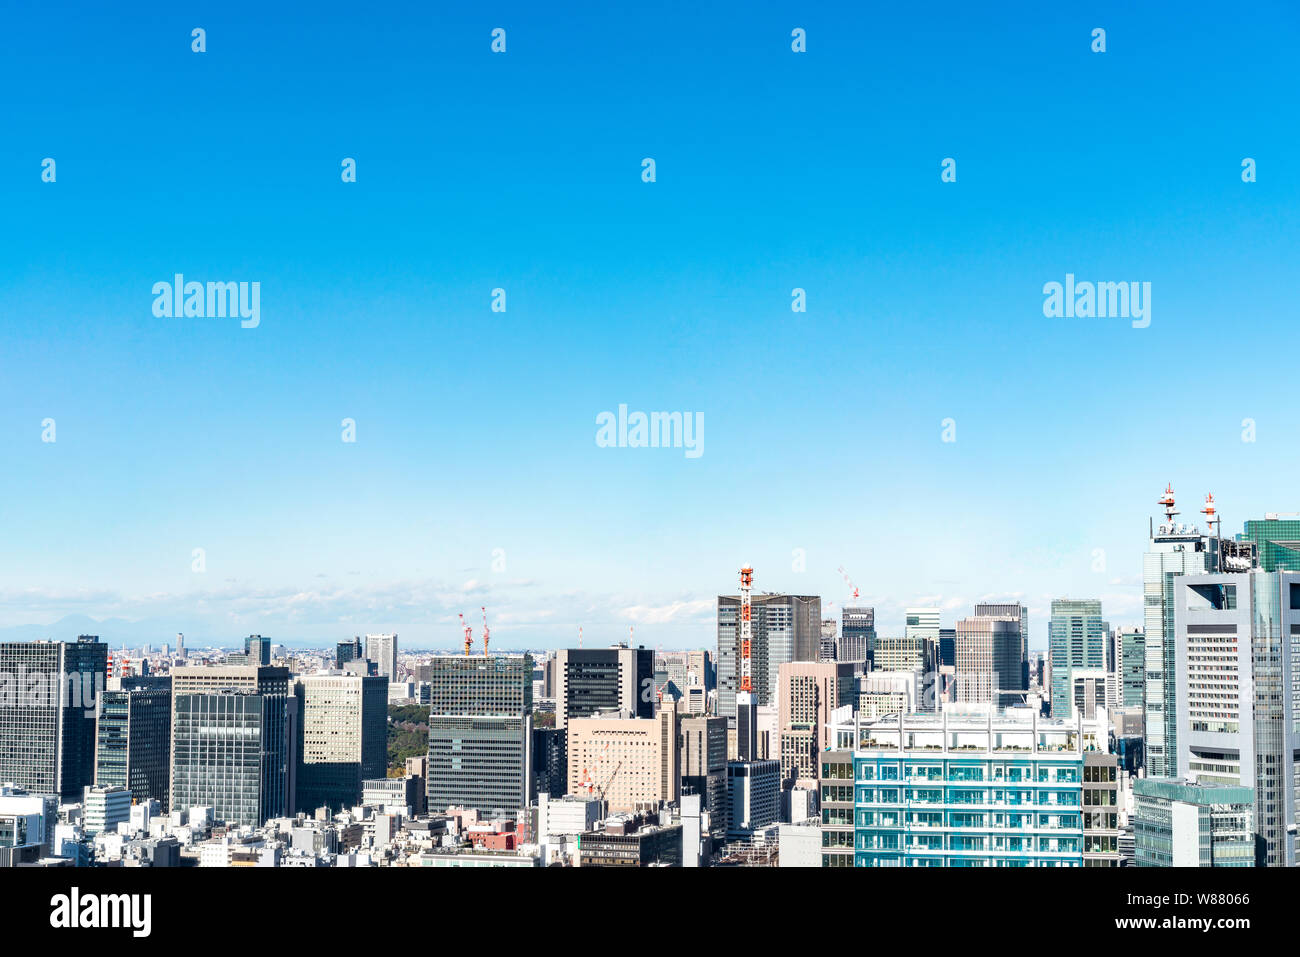 Asien Business Konzept für Immobilien und Corporate Bau - Panoramablick auf die City Skyline Luftbild unter blauem Himmel in der hamamatsucho, Tokyo, Jap Stockfoto